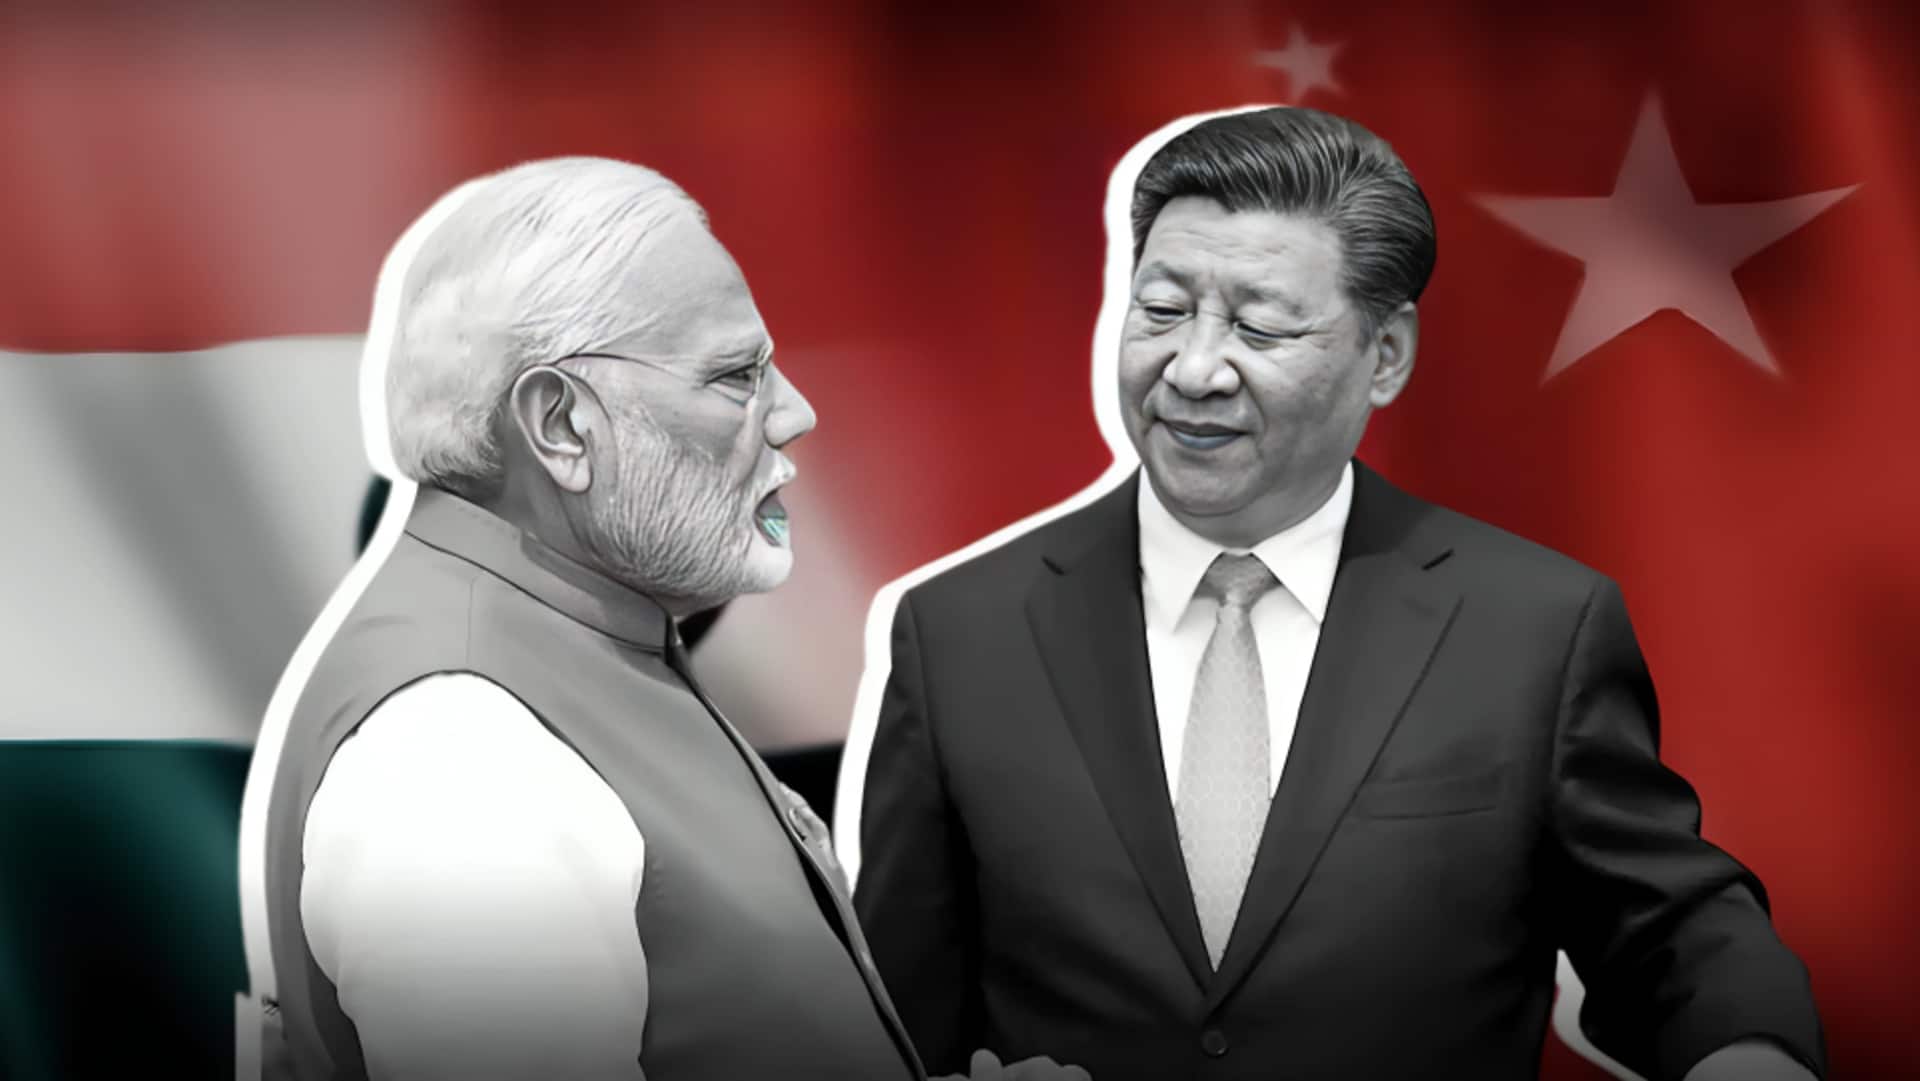 भारत ने चीन को दिया कड़ा जवाब, प्रधानमंत्री मोदी की अरुणाचल यात्रा पर जताई थी आपत्ति